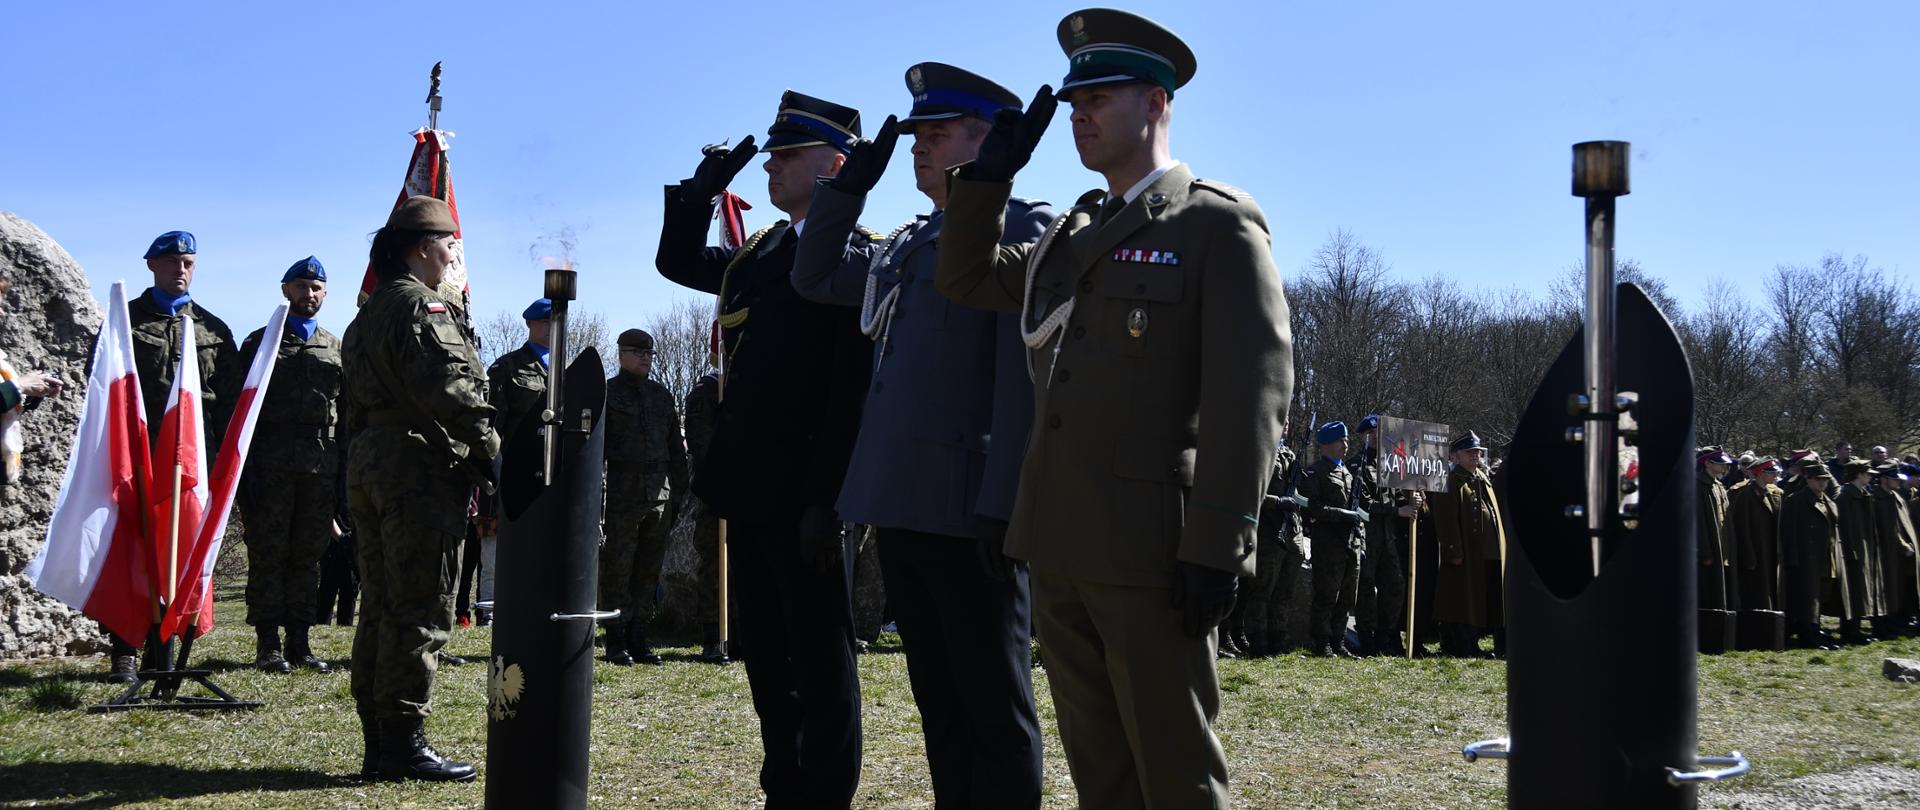 Na zdjęciu widzimy trzech mężczyzn w mundurach trzech służb - Państwowej Straży Pożarnej, Policji, Straży Granicznej - składających wieniec. Mężczyźni salutują.